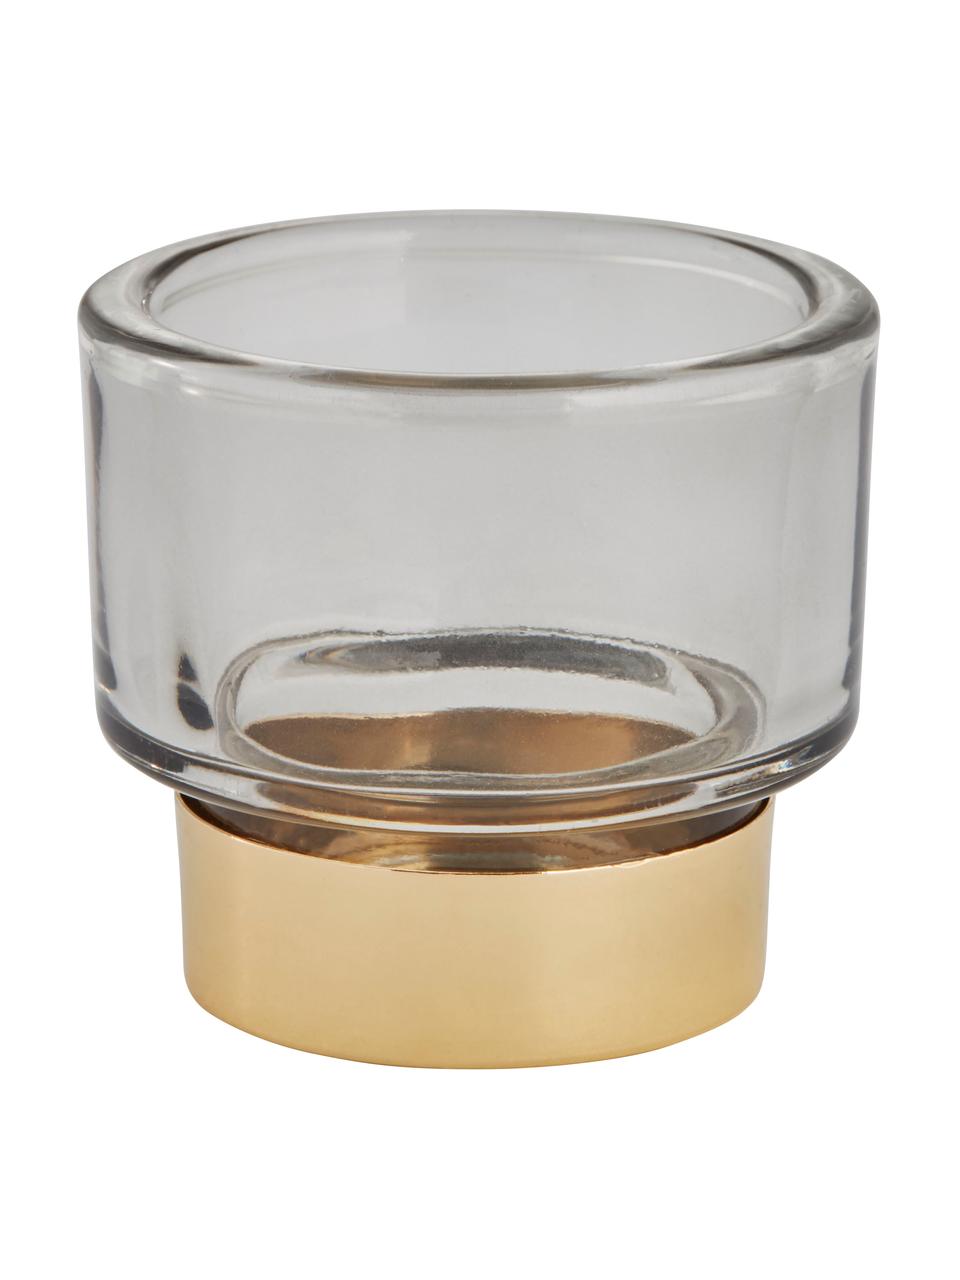 Handgefertigter Teelichthalter Miy in Hellgrau, Glas, Grau, transparent, Goldfarben, Ø 8 cm